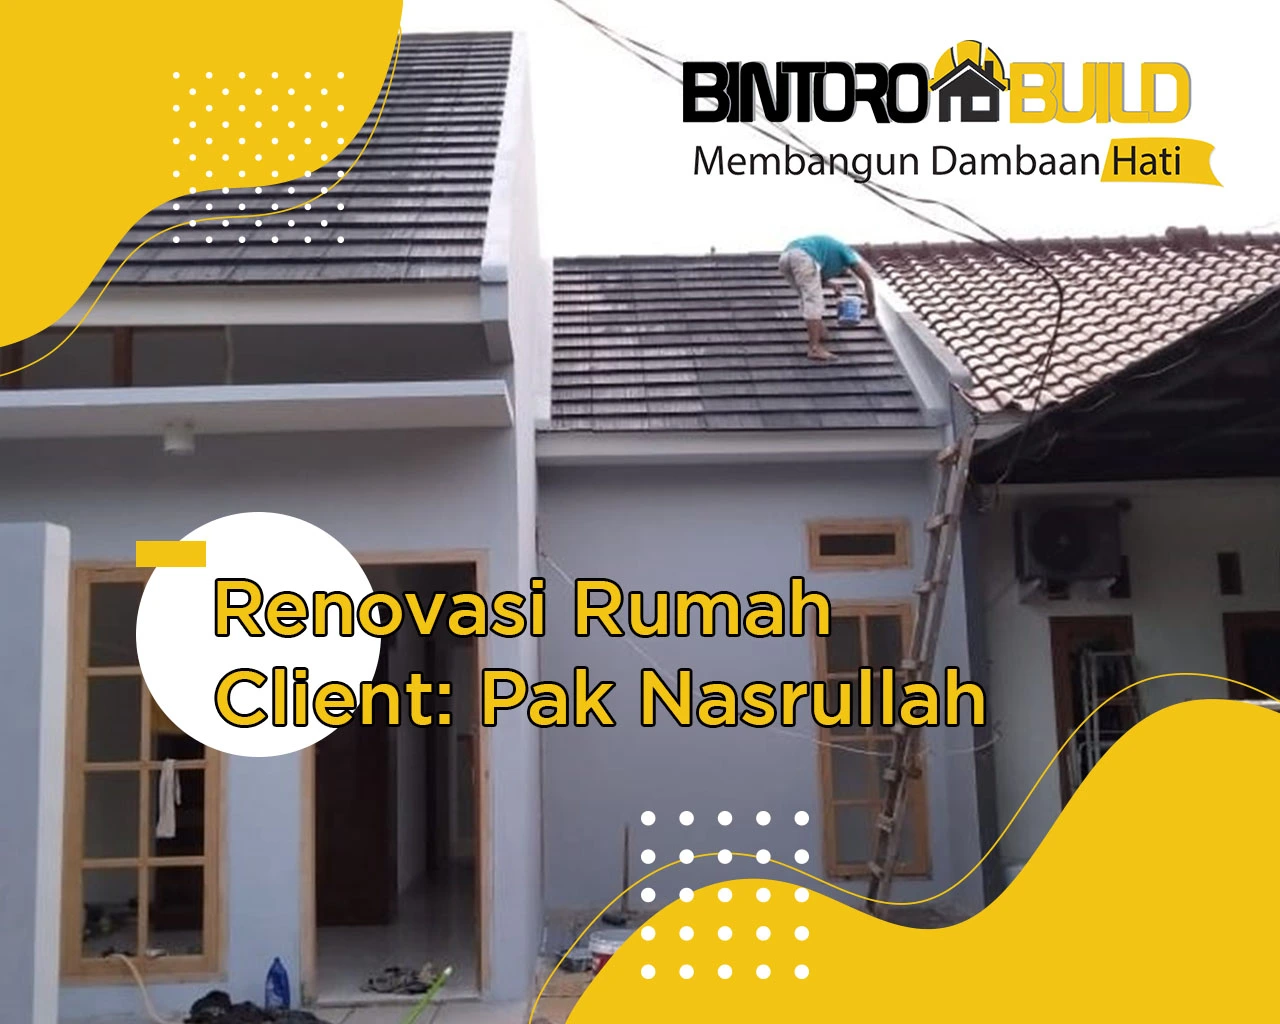 Project 044 Renovasi Rumah Bapak Nasrullah Cibubur BintoroBuild Jasa Renovasi